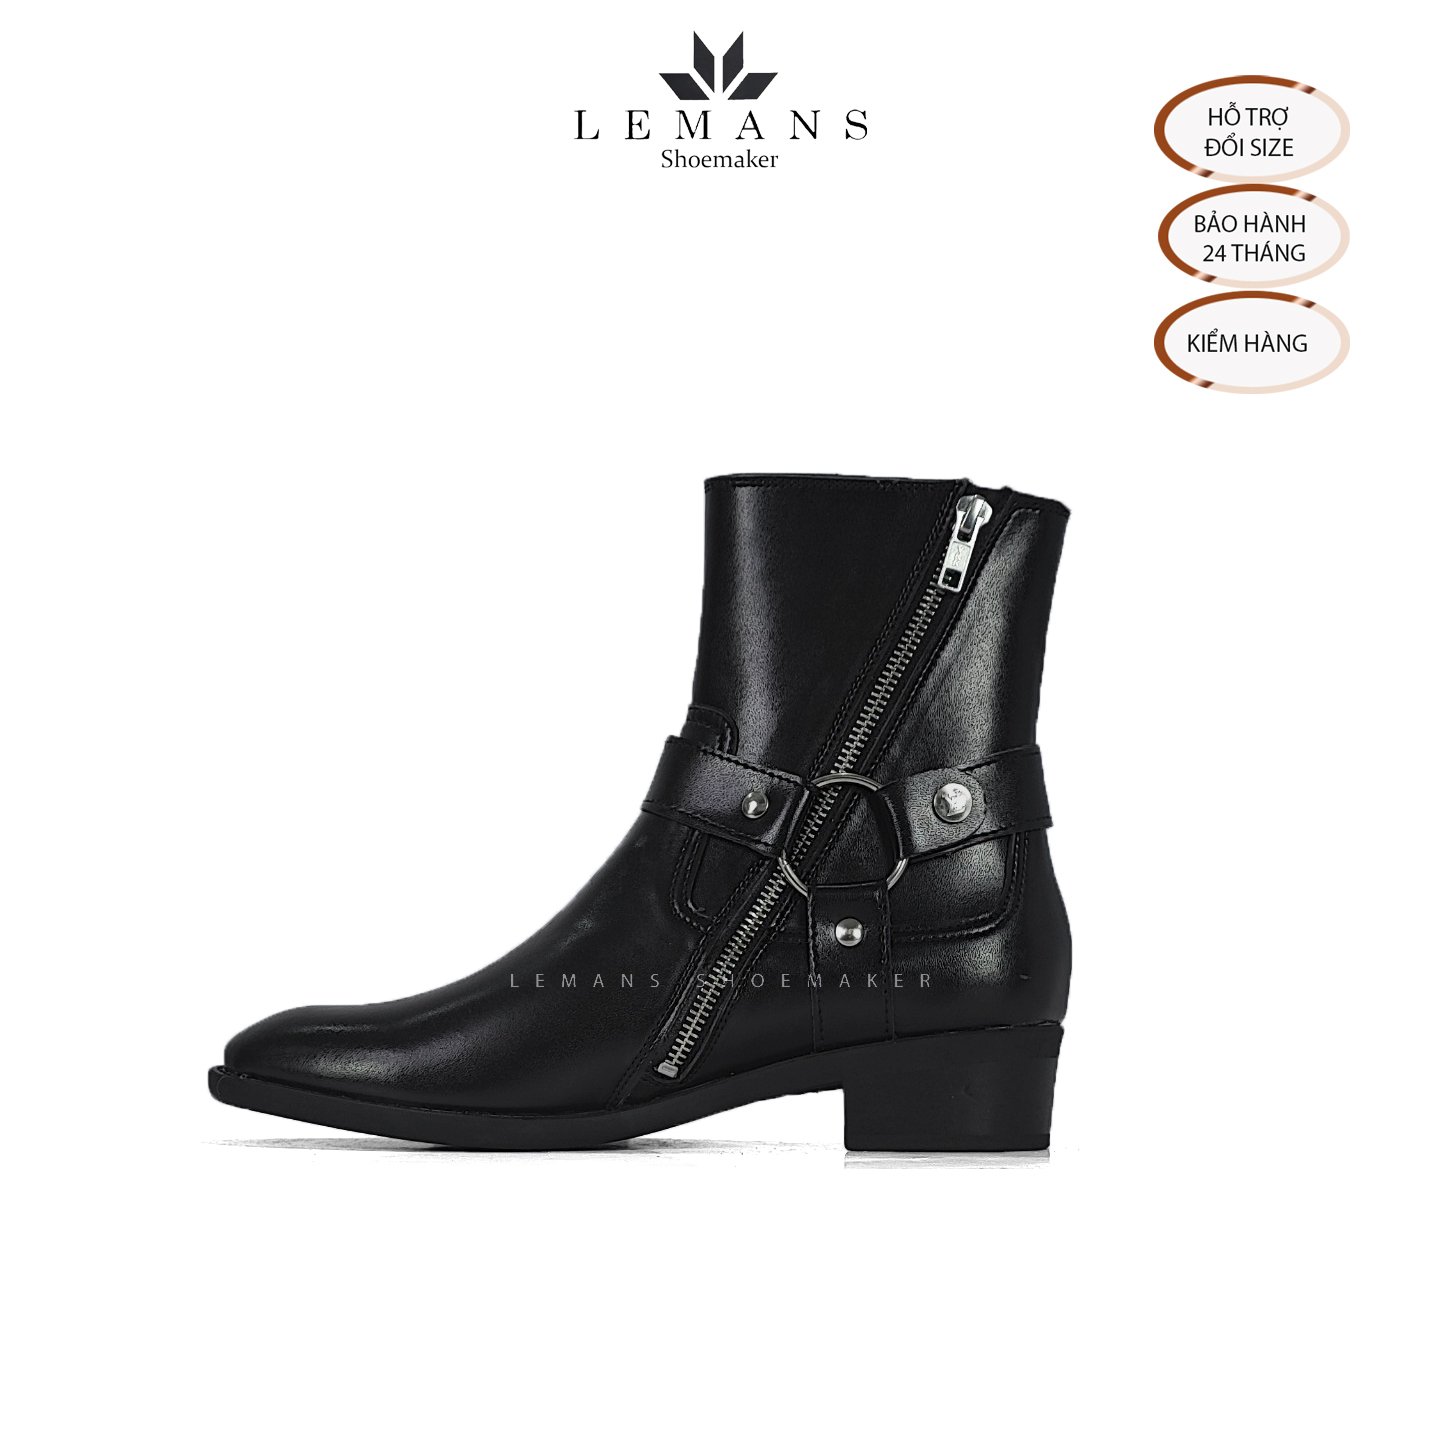 Giày da bò Harness Boots LeMans, gót cao 6cm vân phíp gỗ, khóa kéo YKK, logo gầm độc quyền, bảo hành 24 tháng